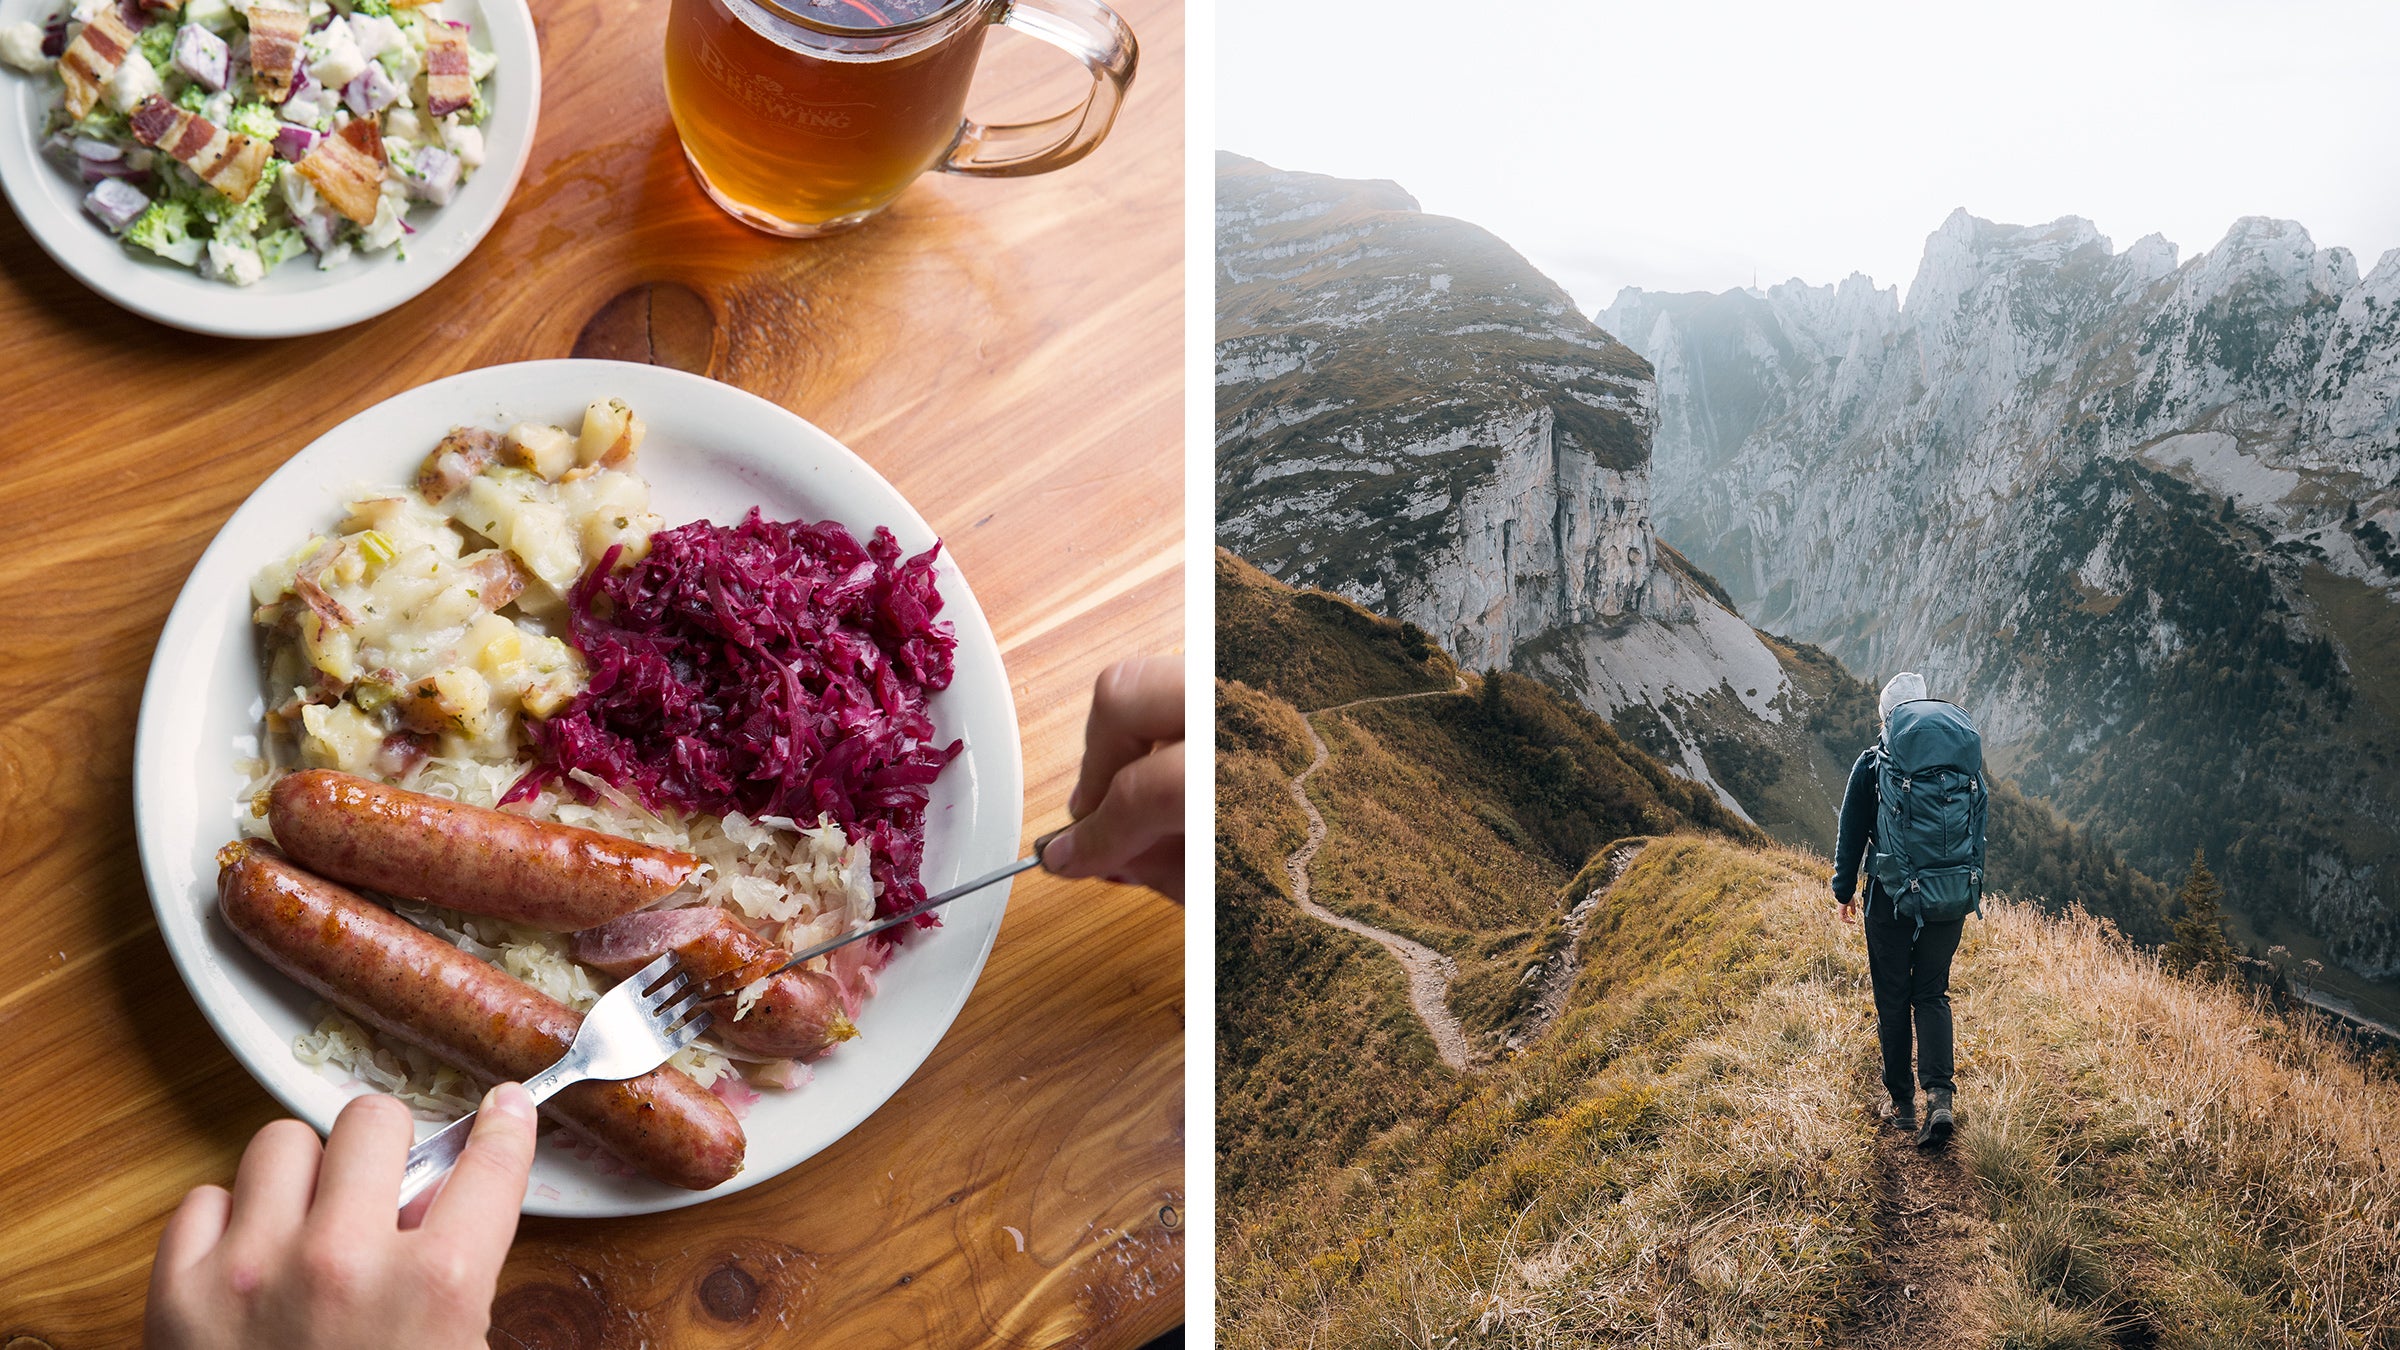 https://cdn.outsideonline.com/wp-content/uploads/2022/07/food-pilgrimages-bratwurst-hiking_h.jpg